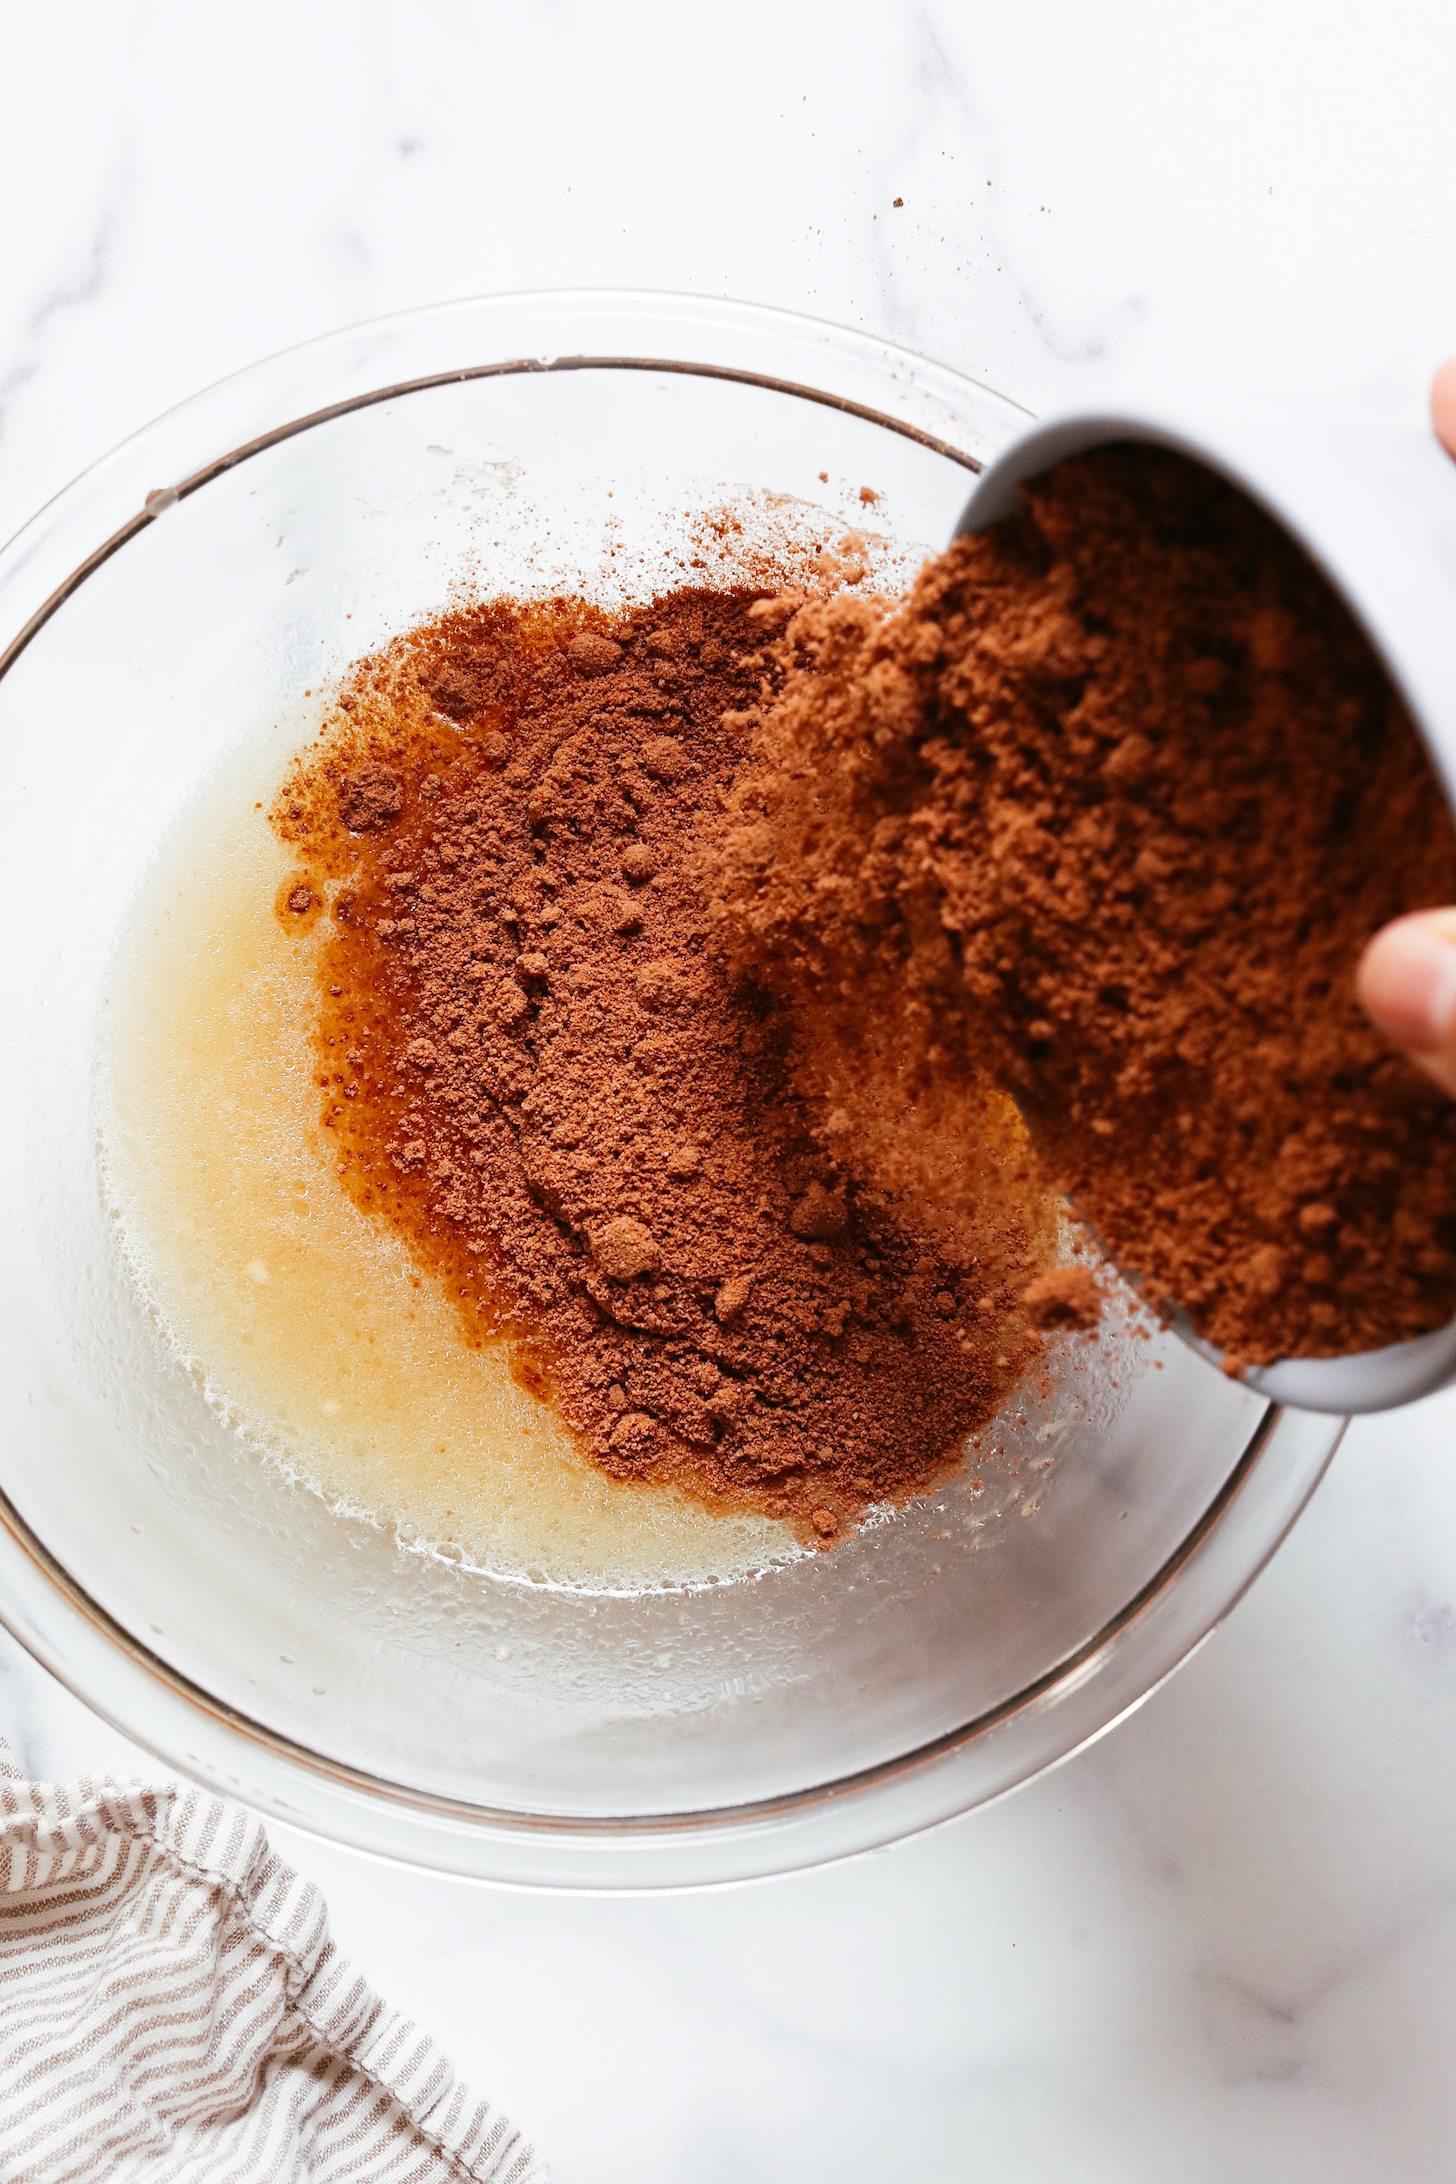 Вылить смесь для шоколадного кекса во влажные ингредиенты